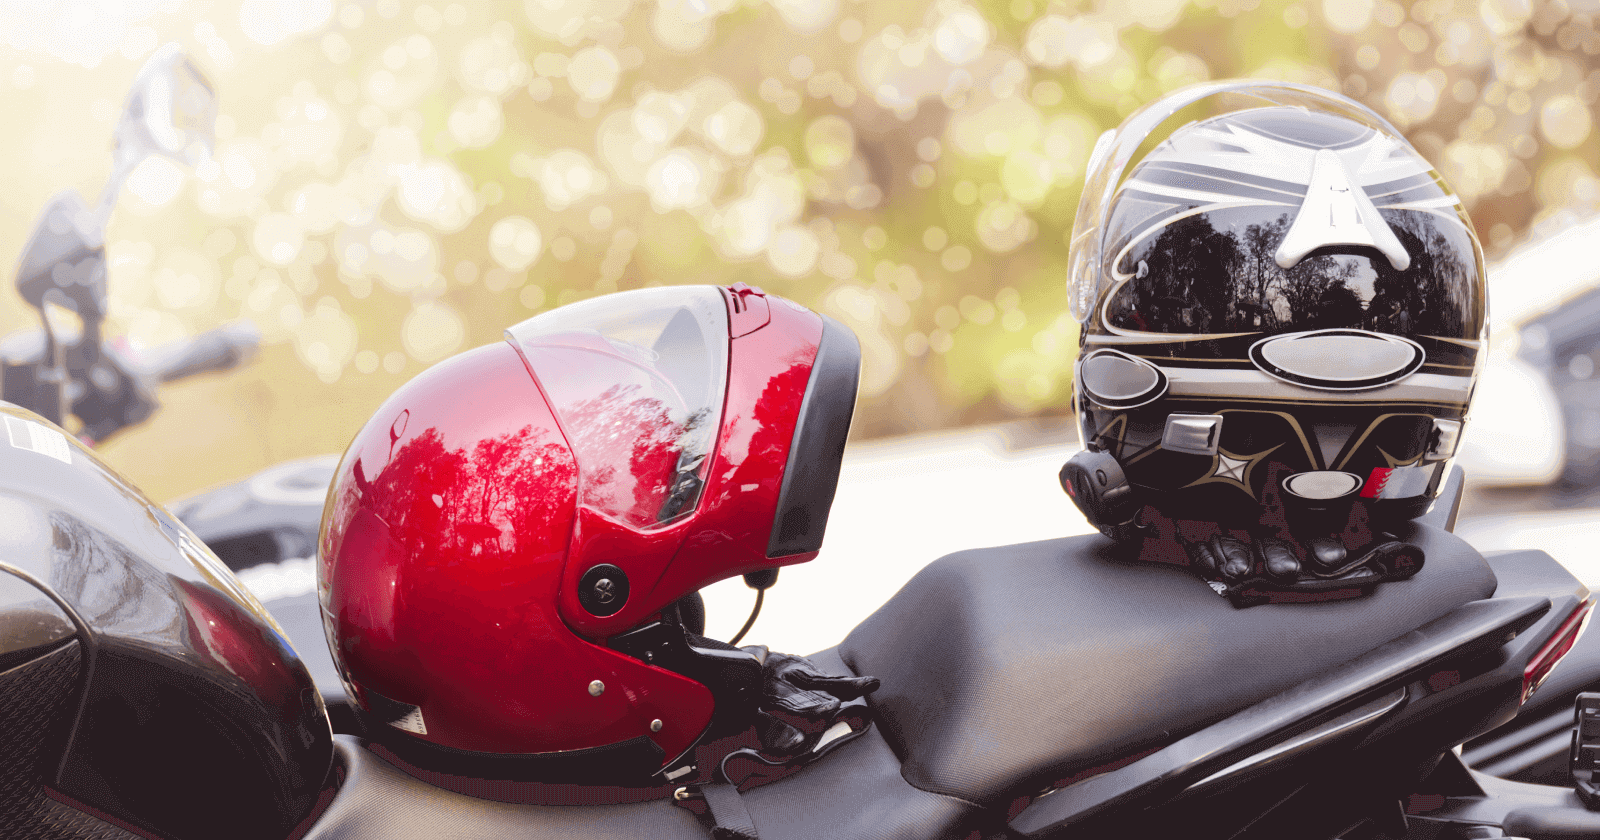 Best Motorcycle Helmets in India 